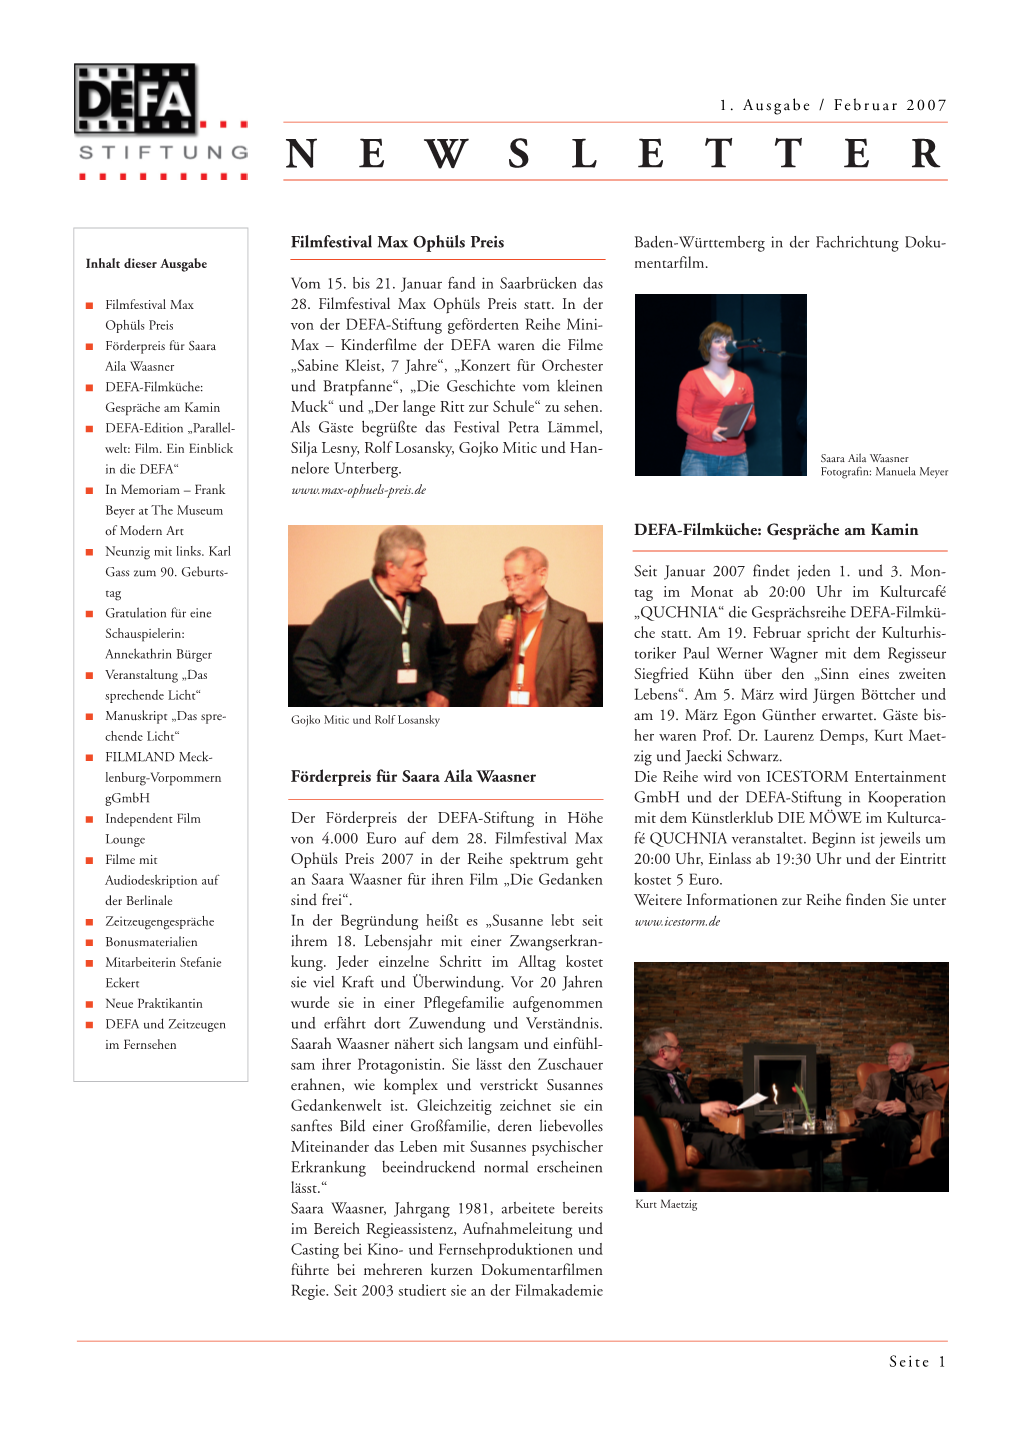 1. DEFA-Newsletter 2007